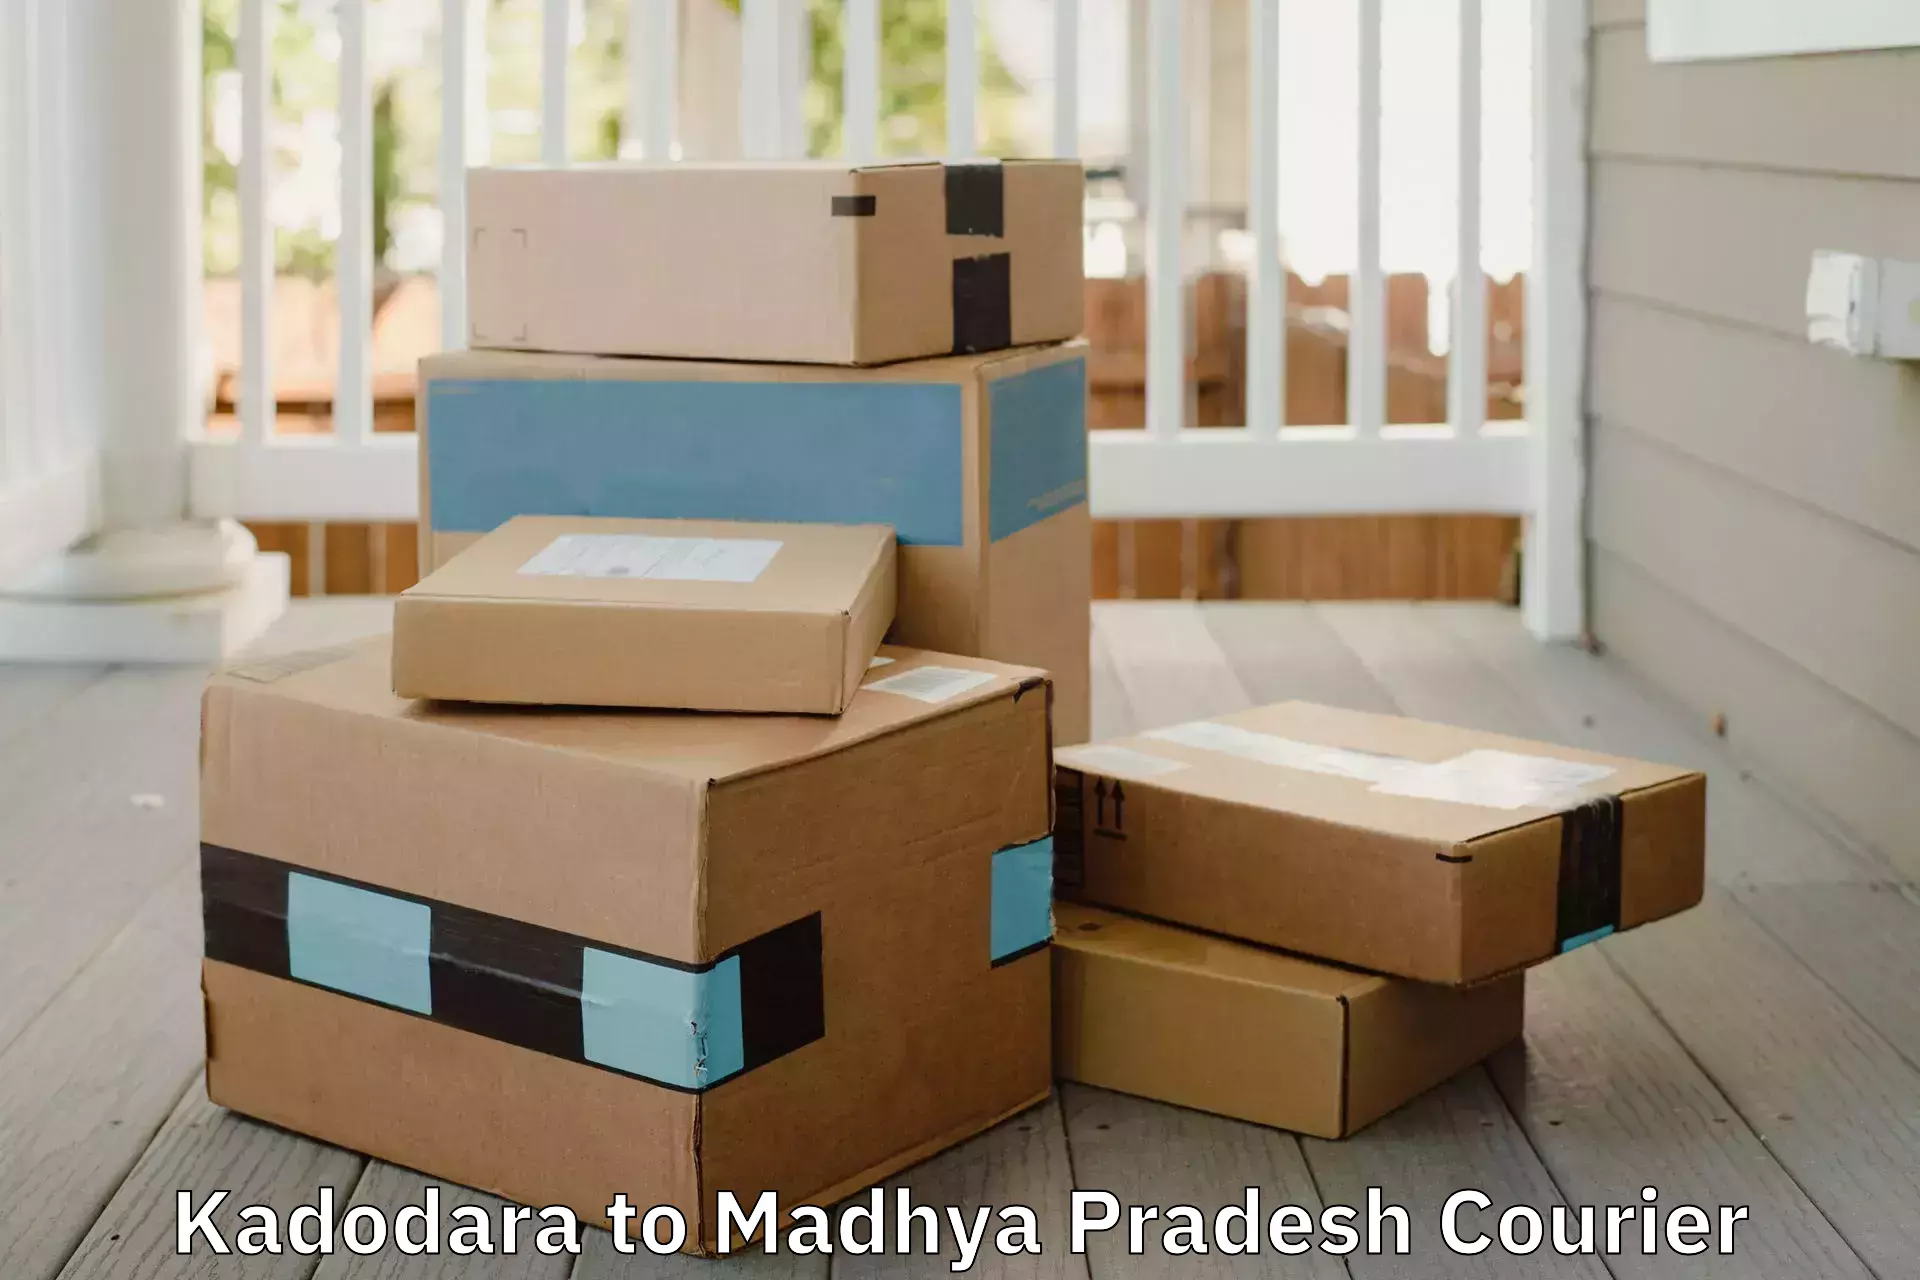 Furniture transport and storage Kadodara to Balaghat